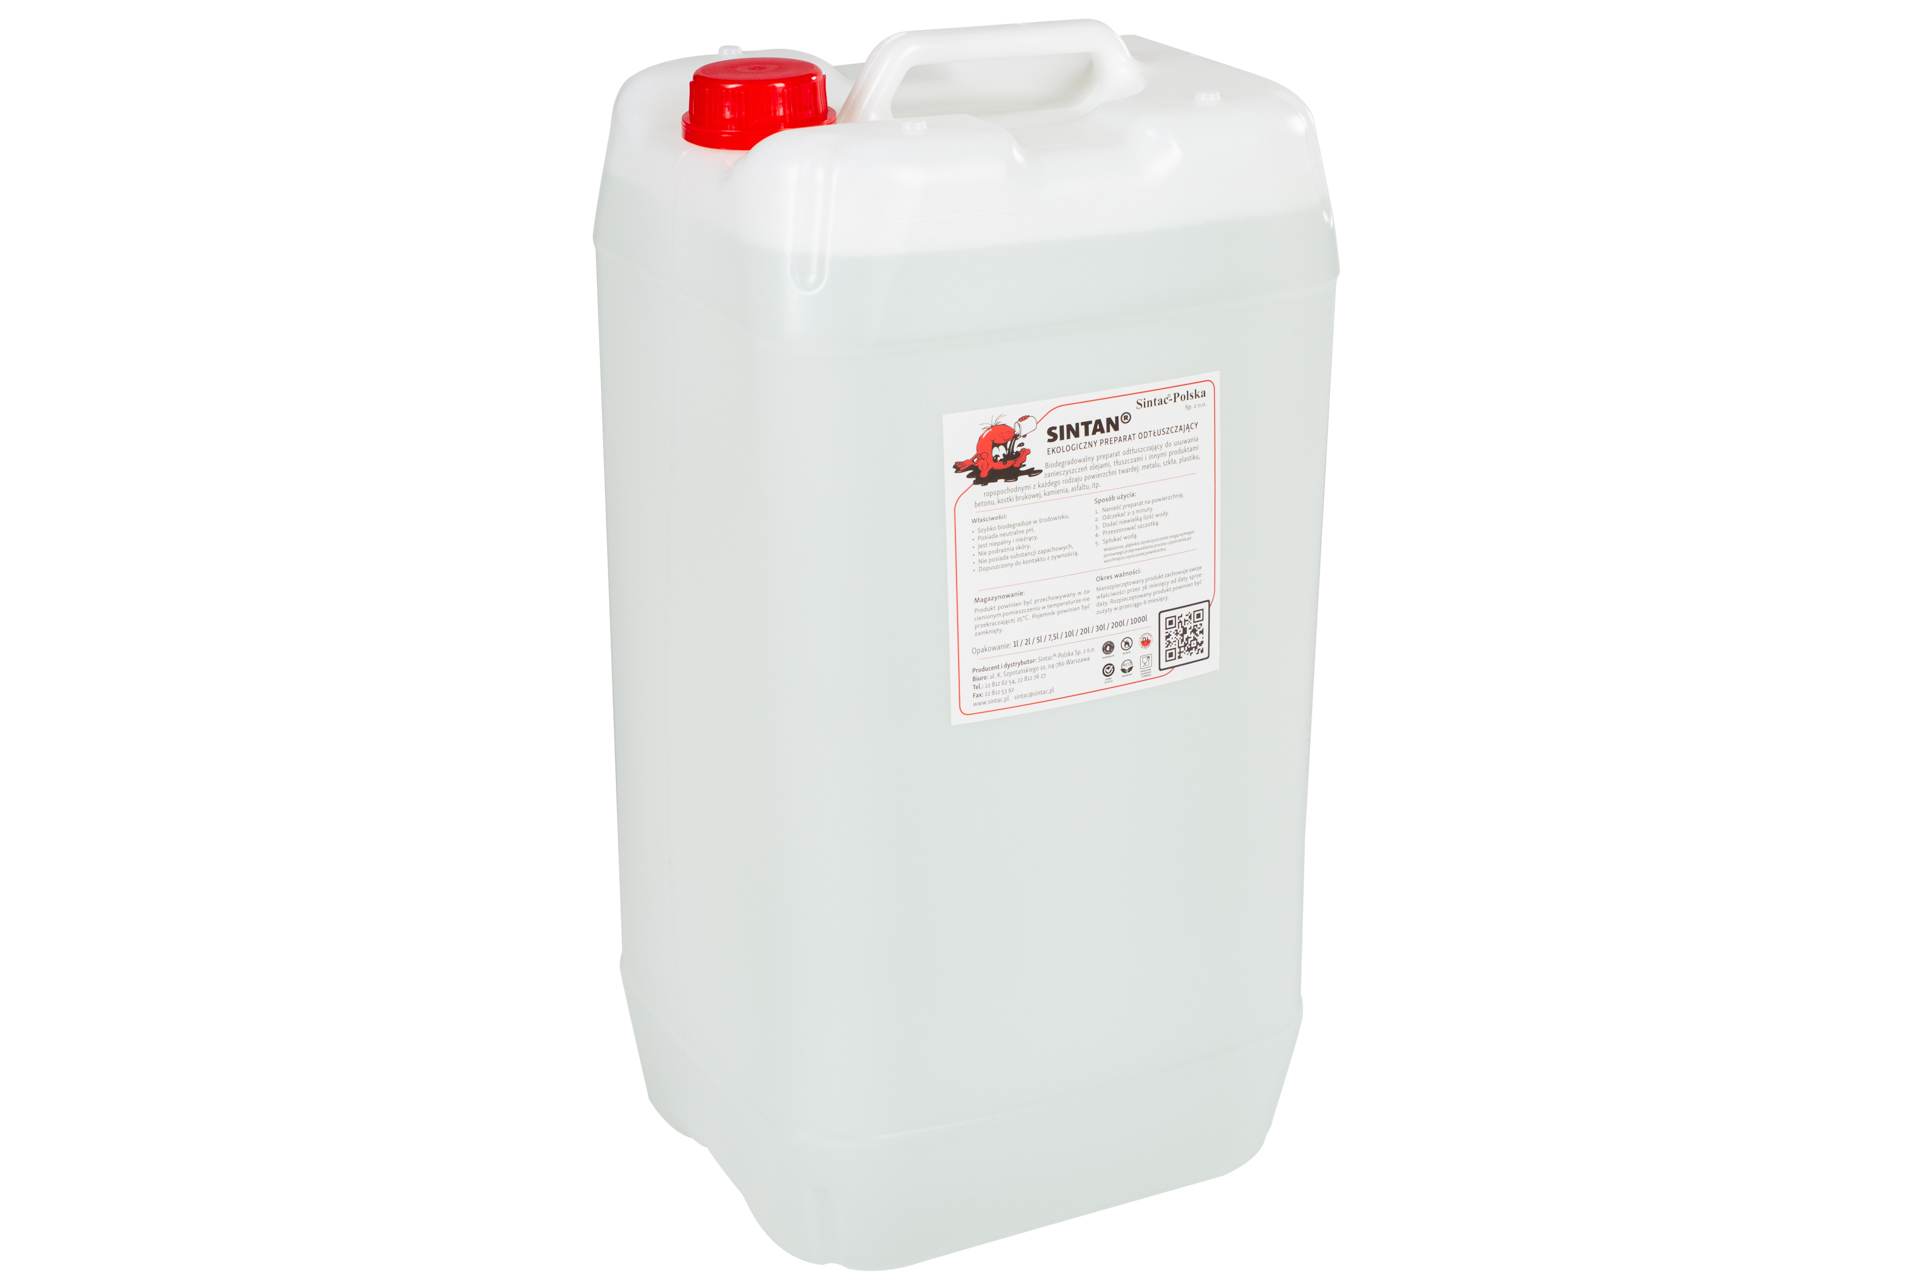 Odtłuszczacz ekologiczny Sintan kanister 30 litrów